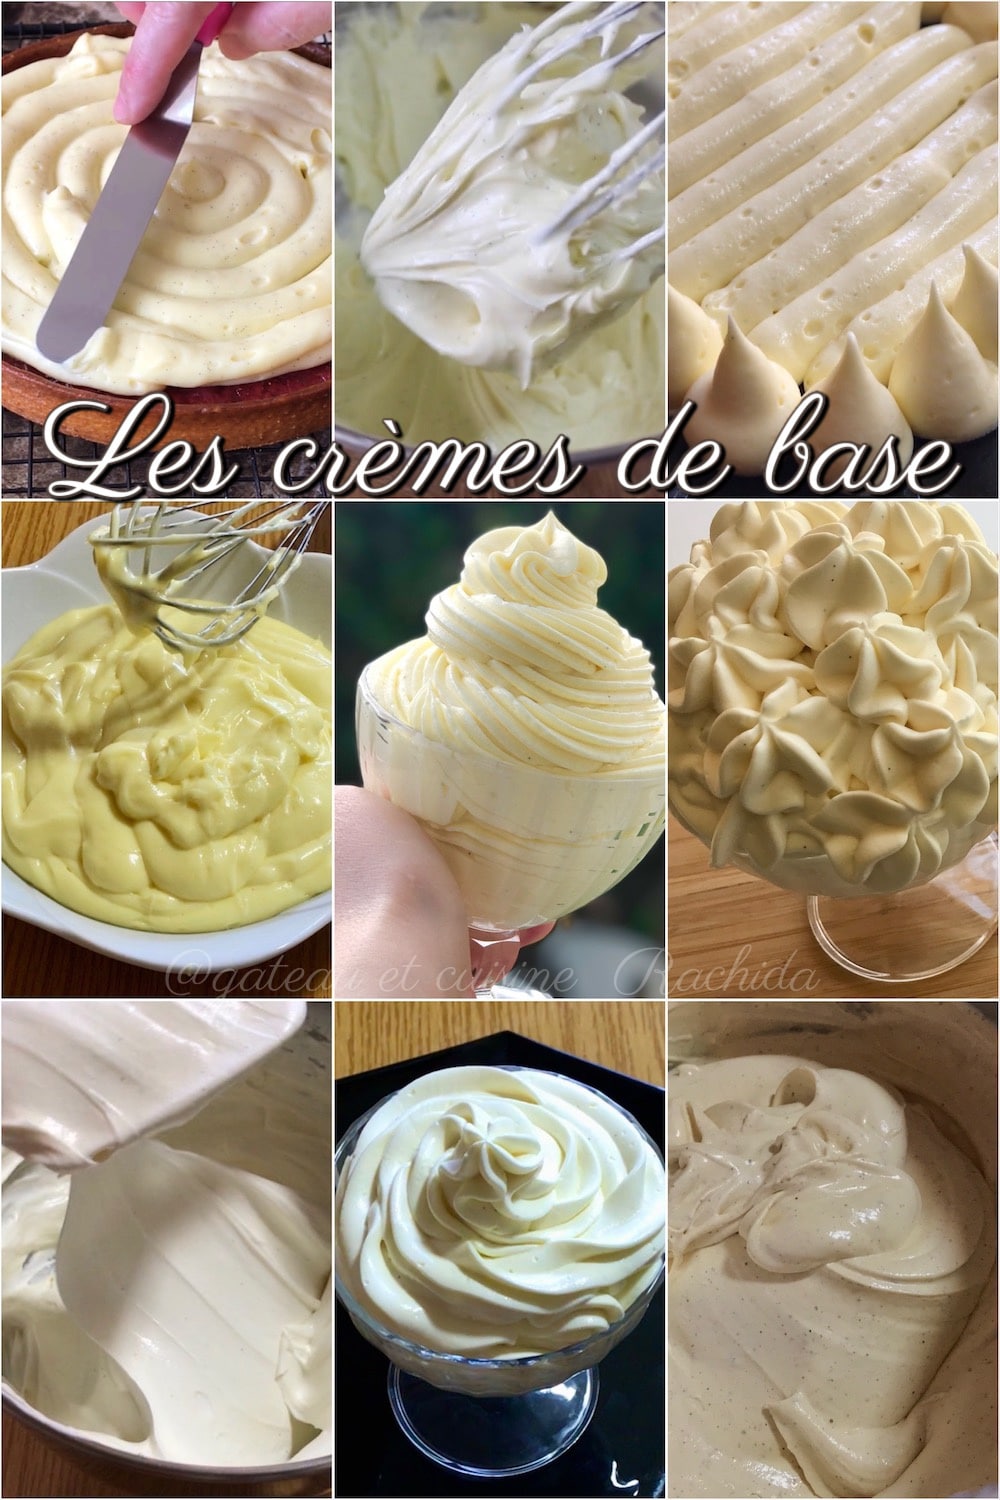 Les crèmes de base dérivées de la crème pâtissière